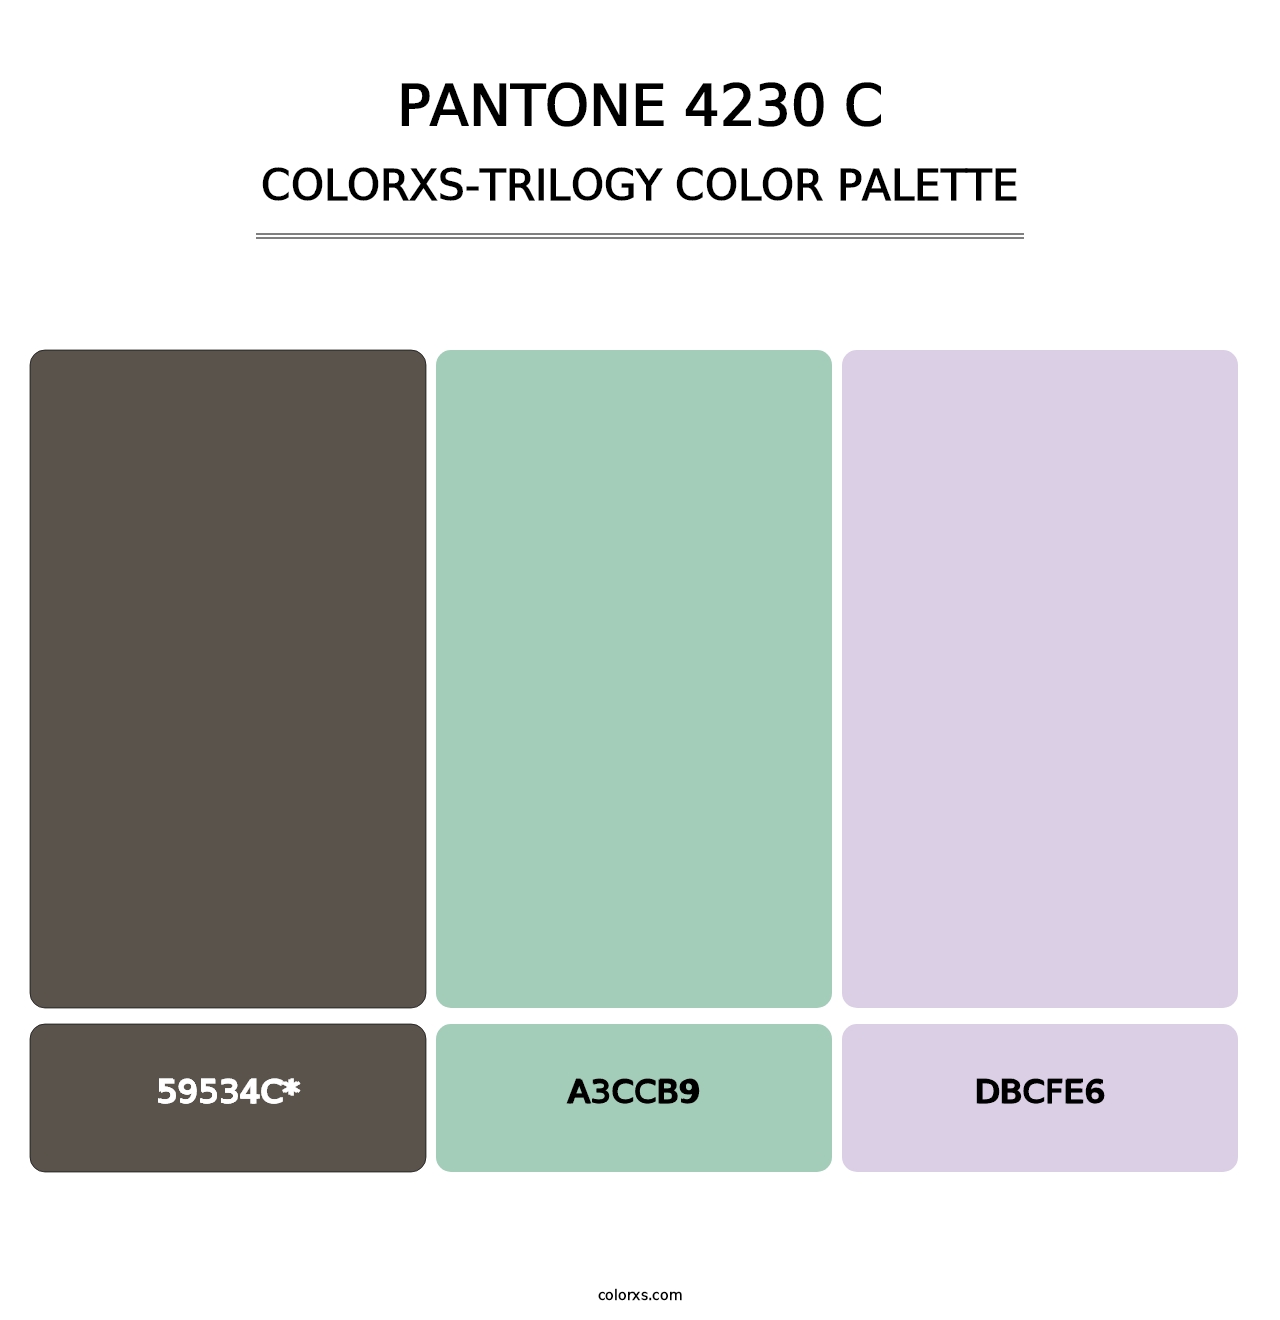 PANTONE 4230 C - Colorxs Trilogy Palette